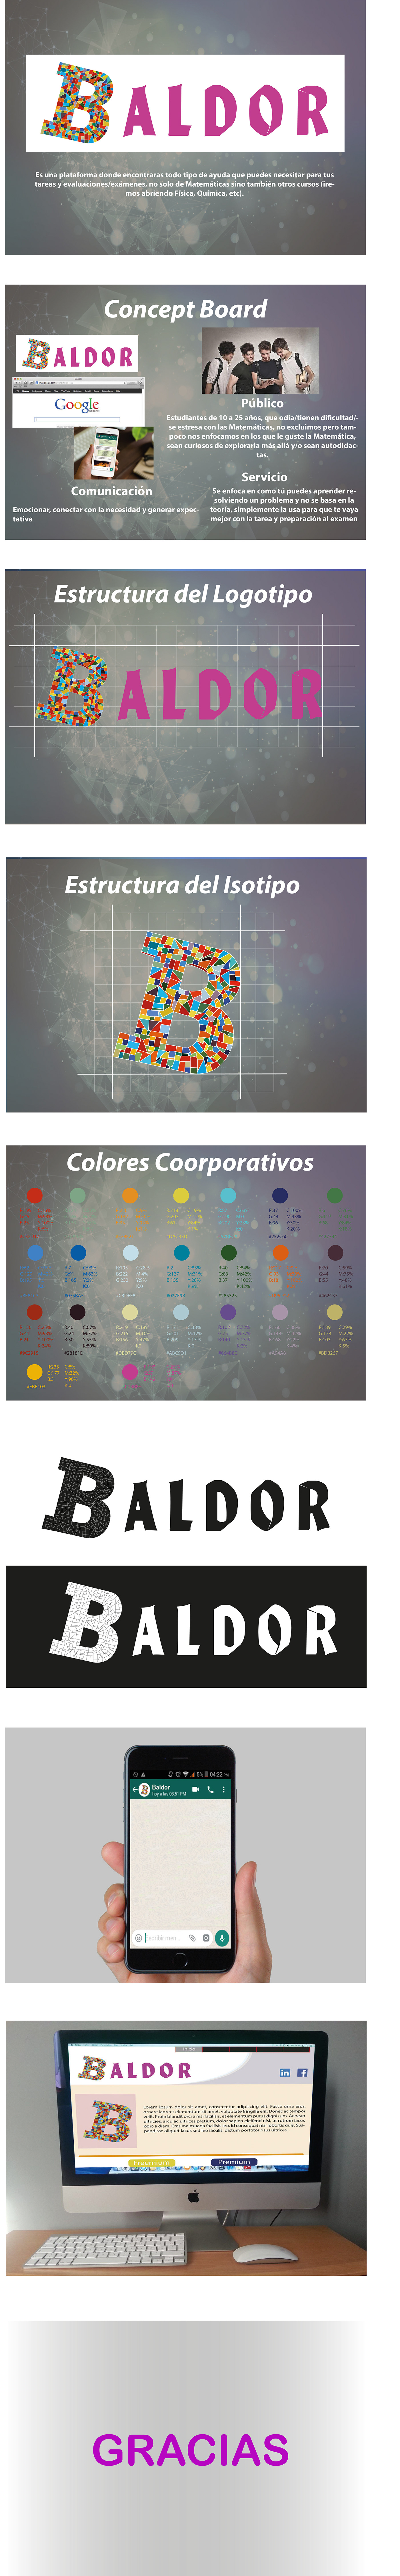 Baldor matemática online colores aprendizaje números branding  Colégio Ayuda marca